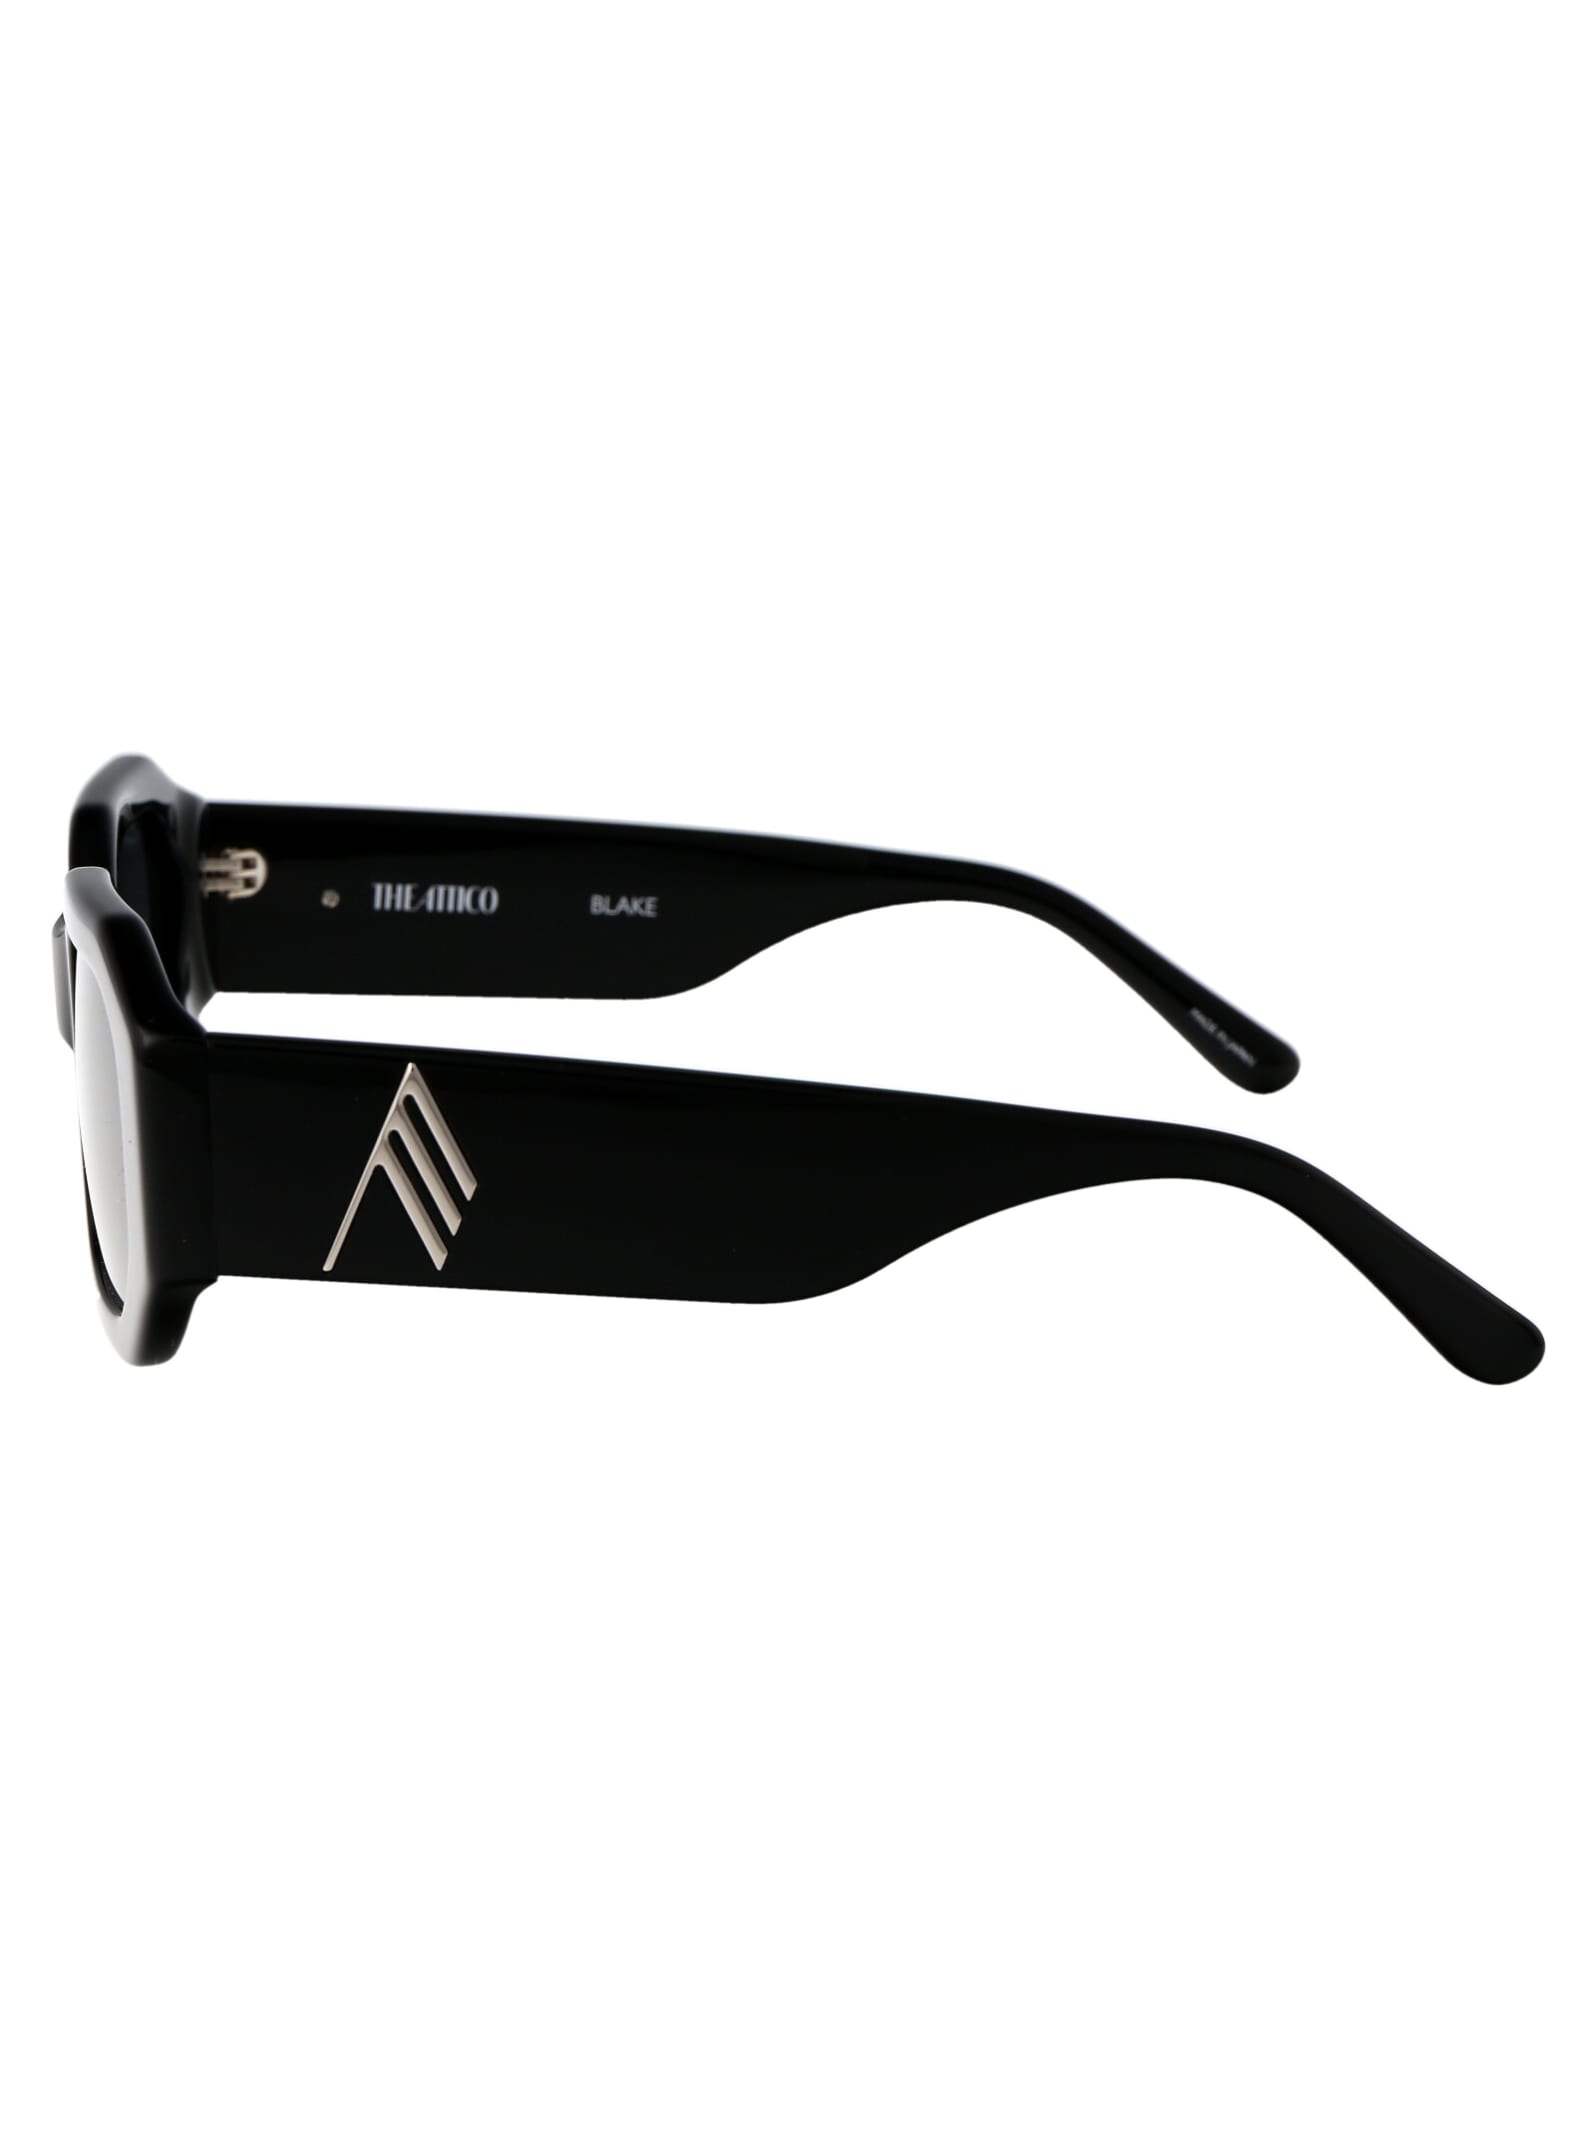 Shop Attico Blake Sunglasses In Black/silver/grey